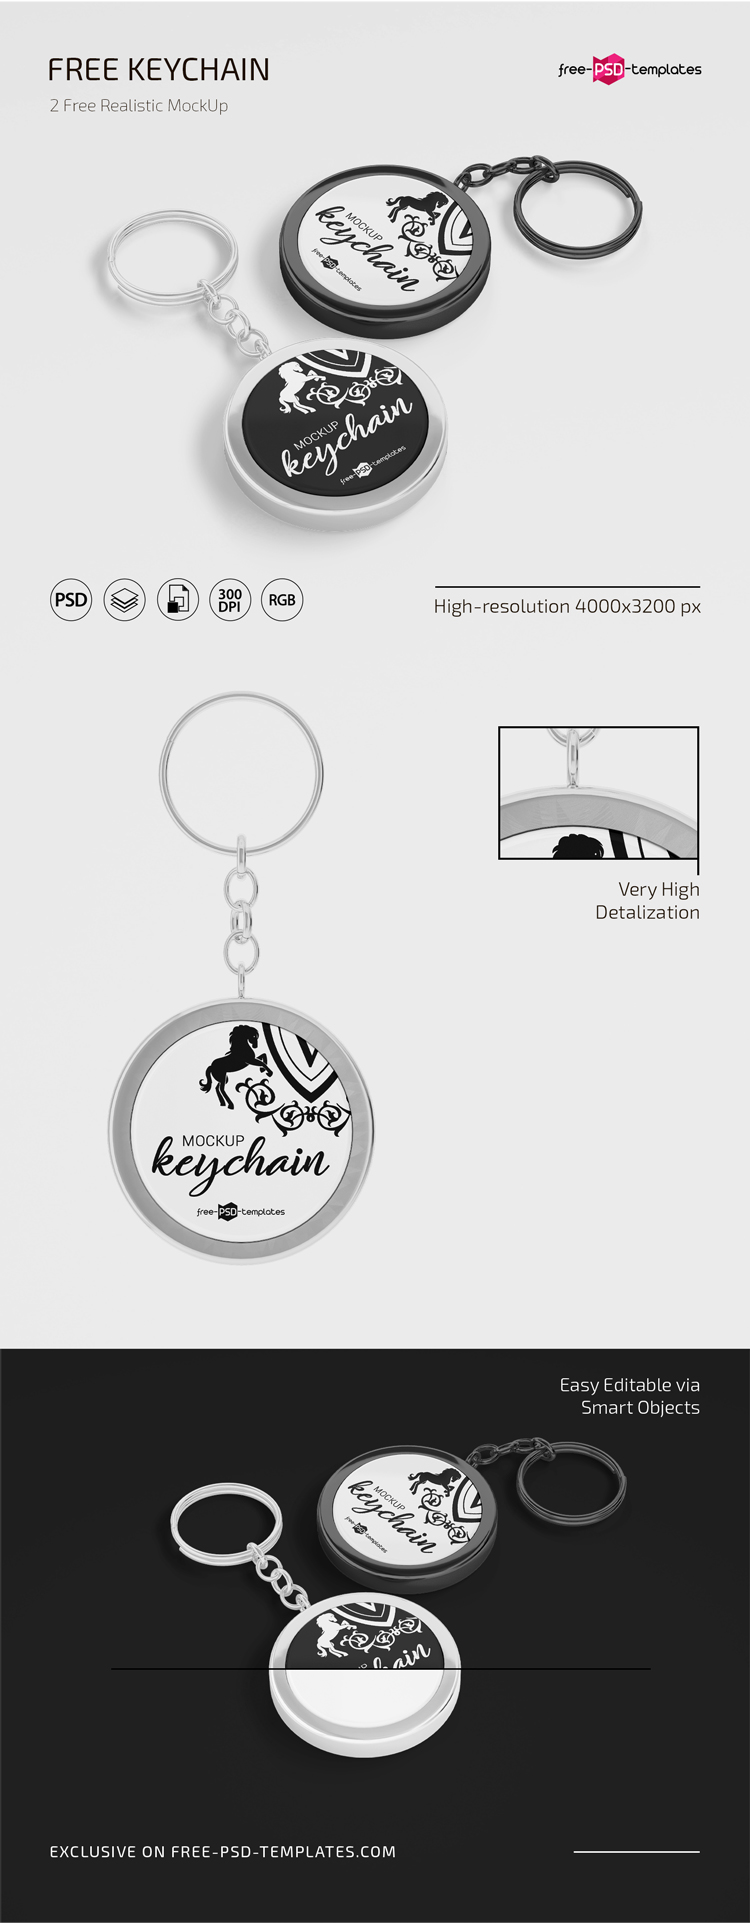 Download Keychain Mockup Psd Free Download : Free Keychain Mockup ...